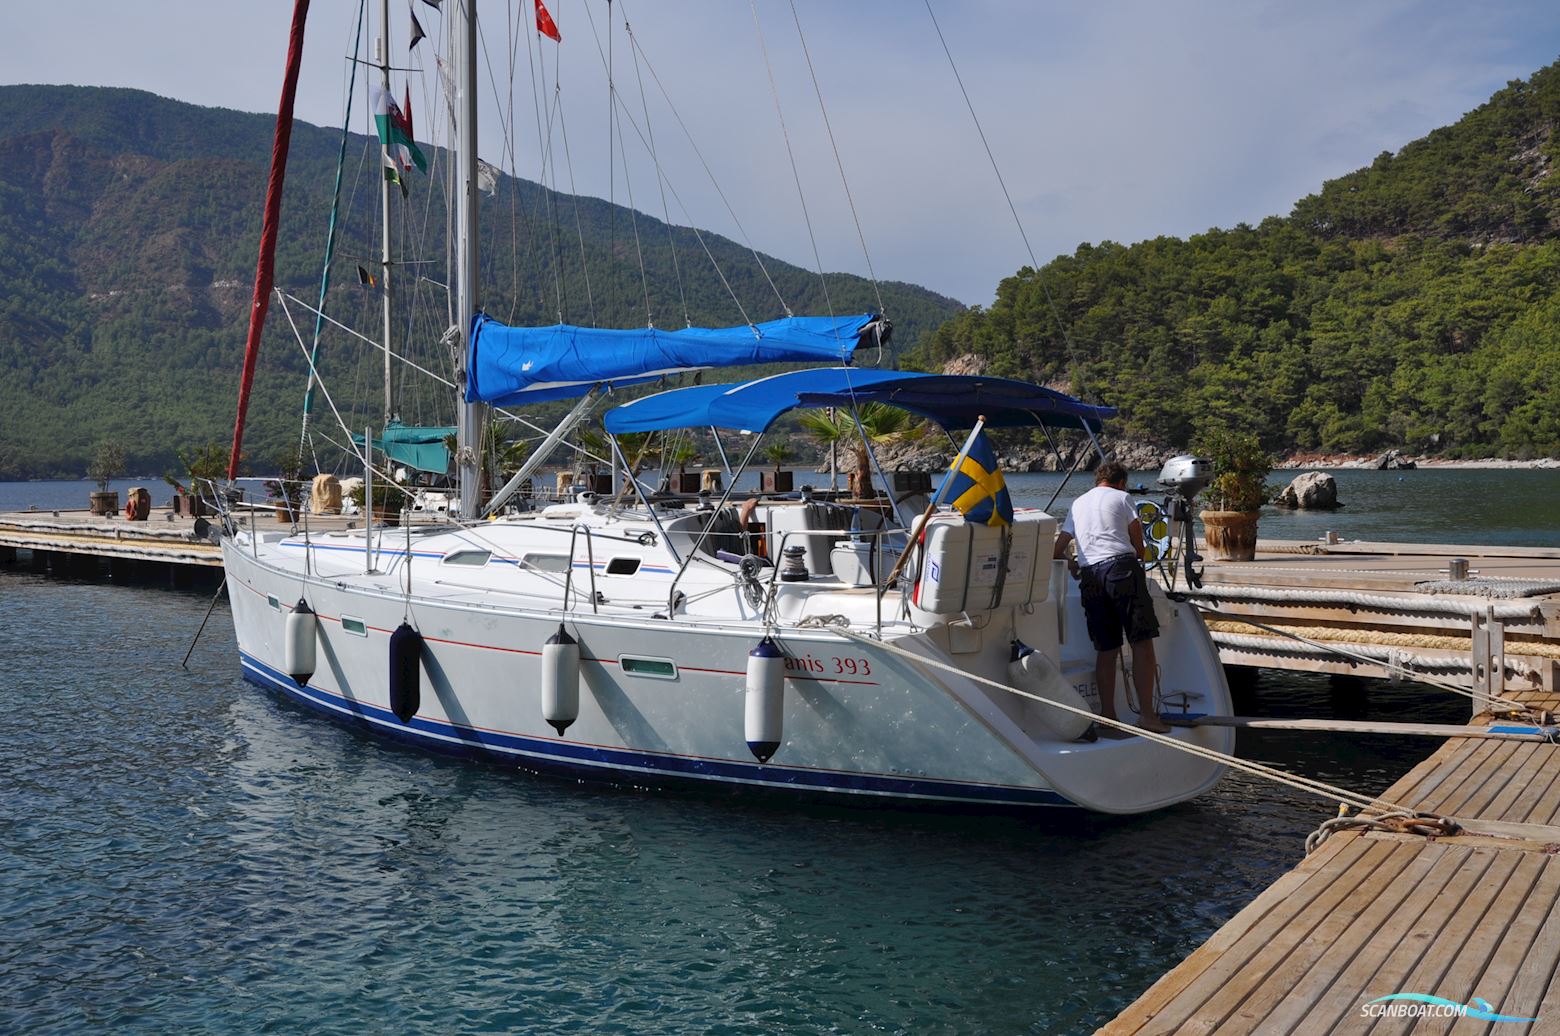 Bénéteau Océanis 393 Segelbåt 2006, med Yanmar motor, Tyrkiet